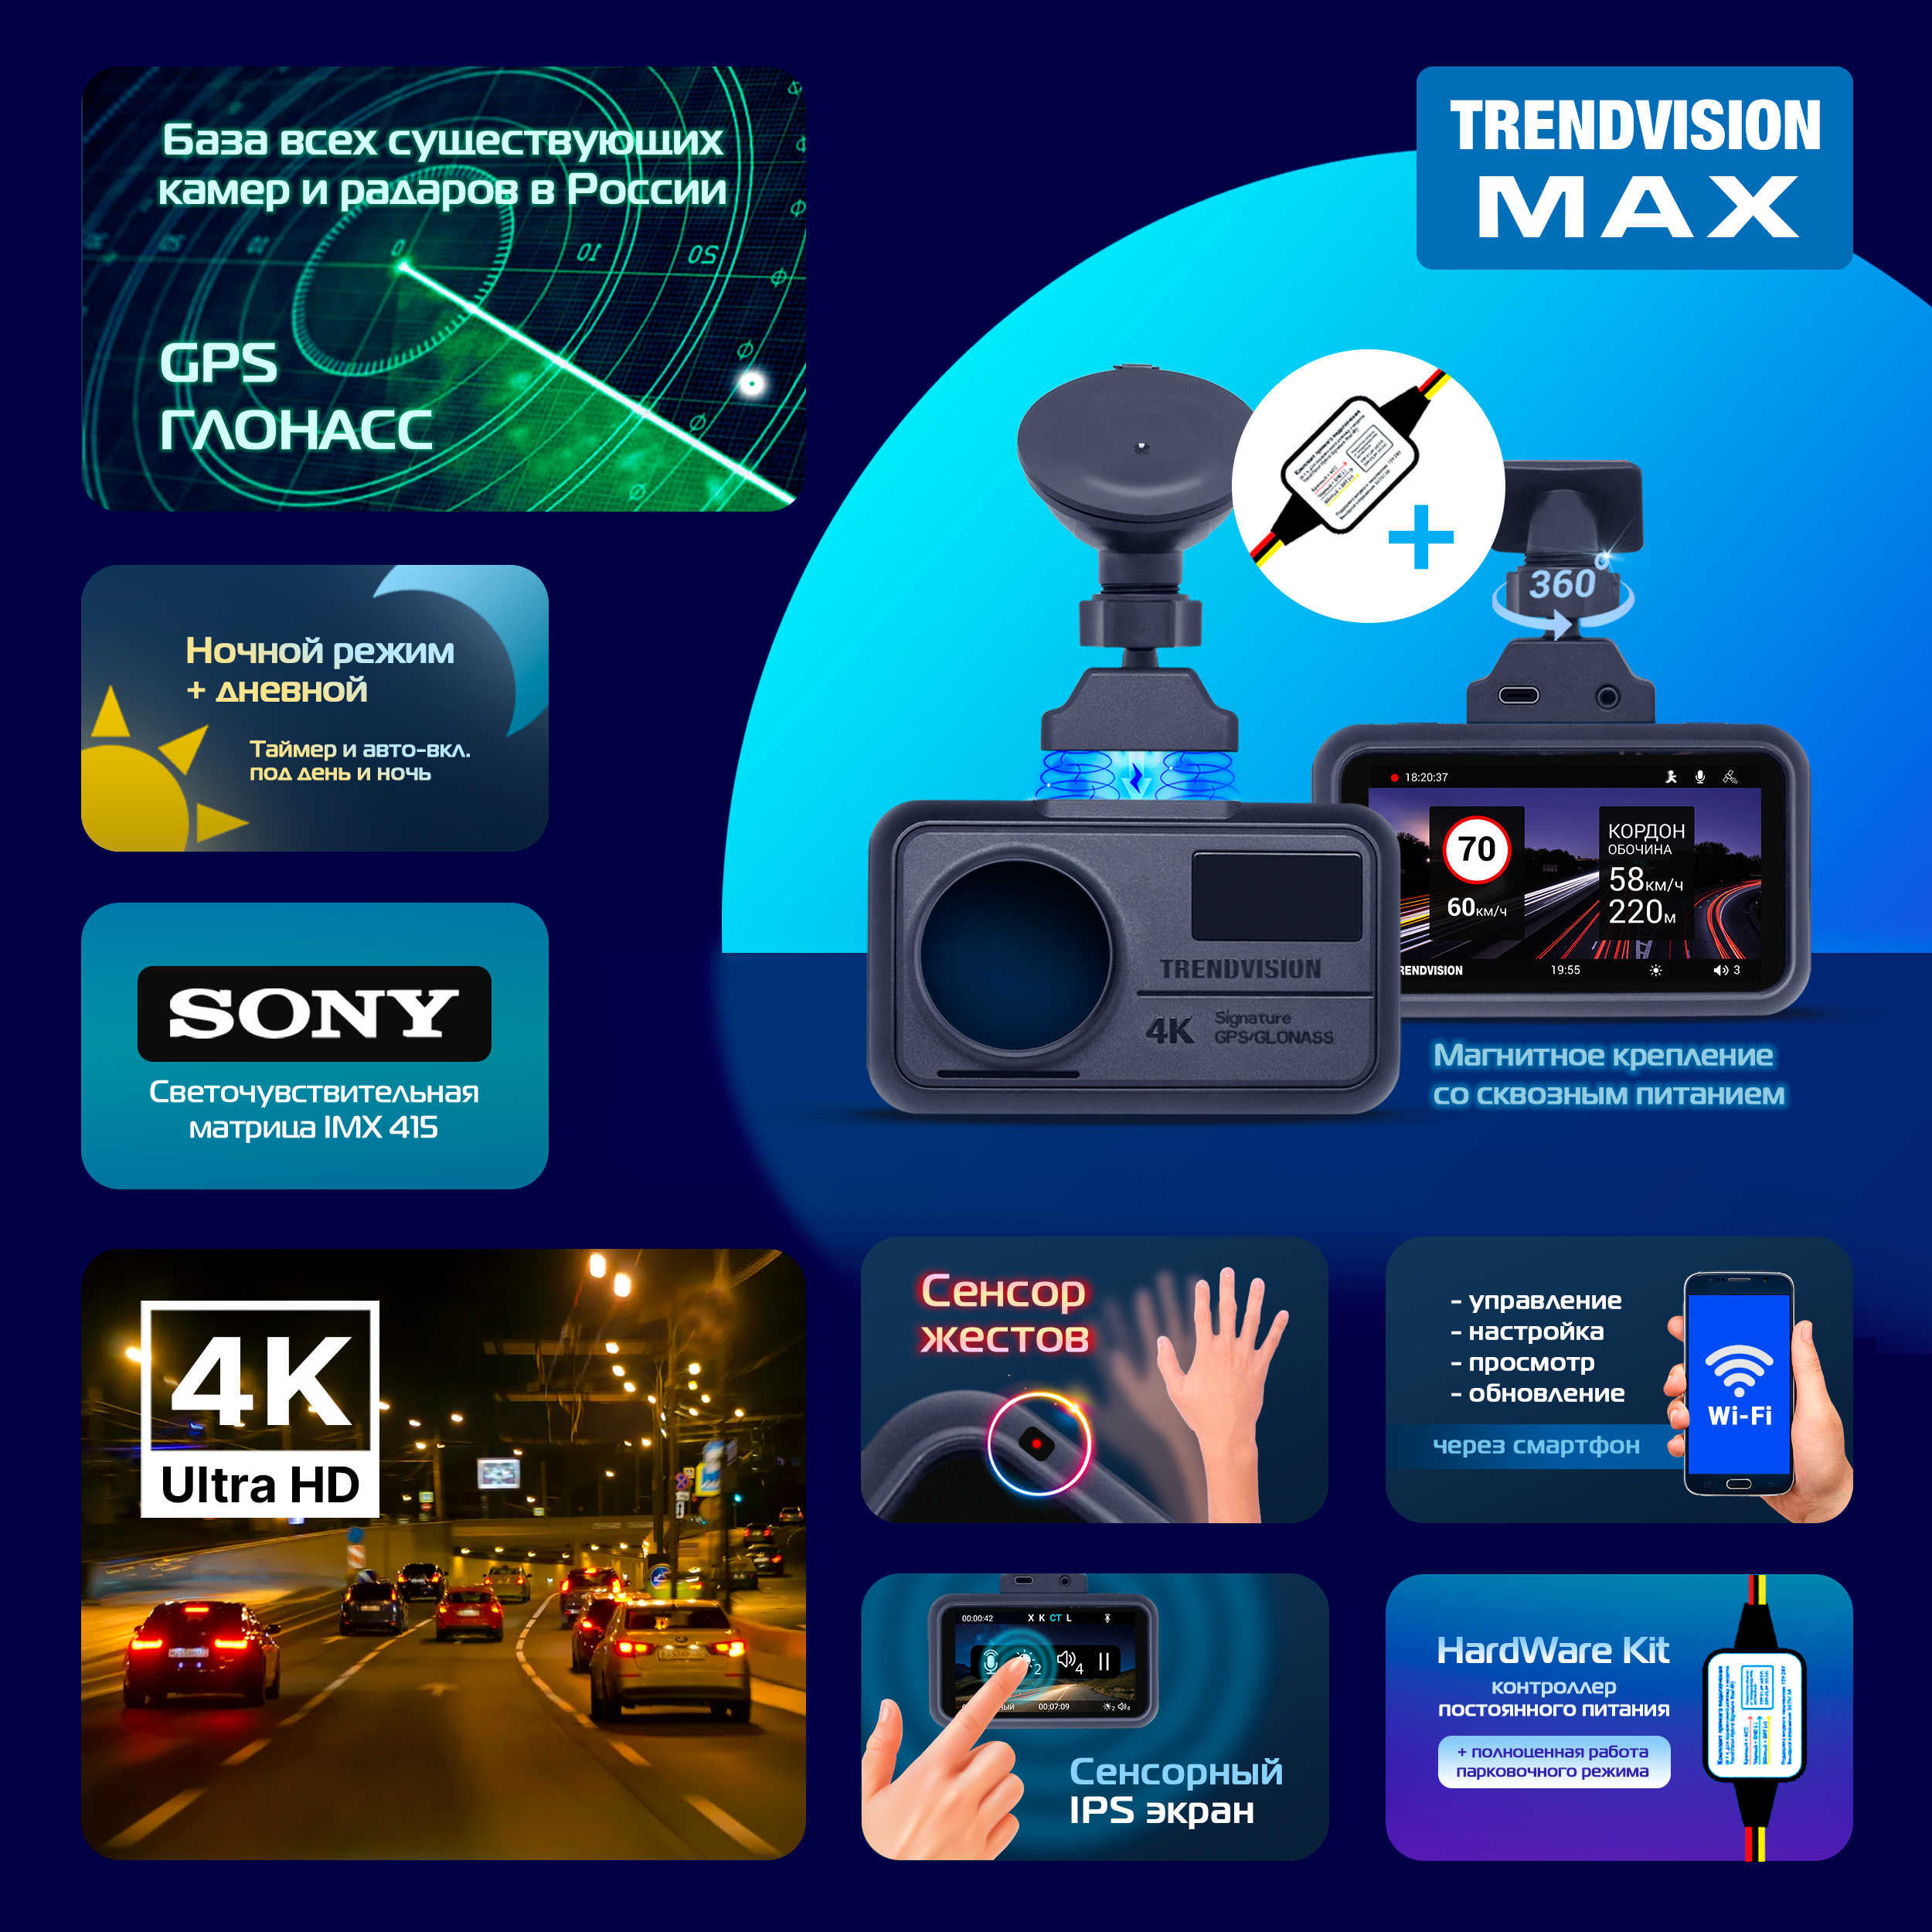 Видеорегистратор TrendVision MAX - 4К (SONY), HardWare Kit, сенсоры, GPS, CPL, Wi-Fi